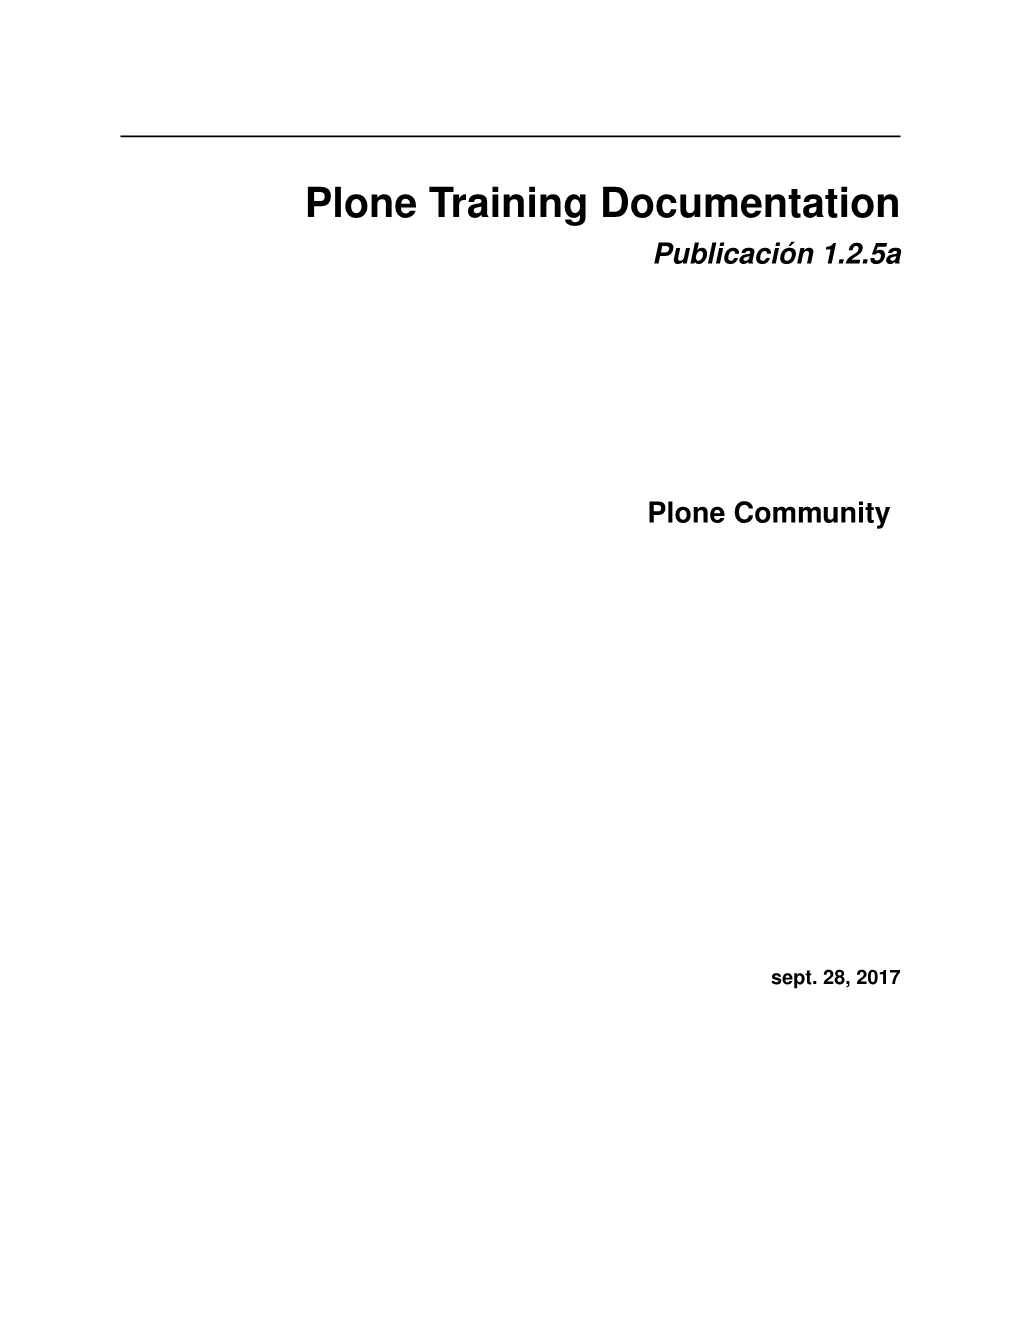 Plone Training Documentation Publicación 1.2.5A